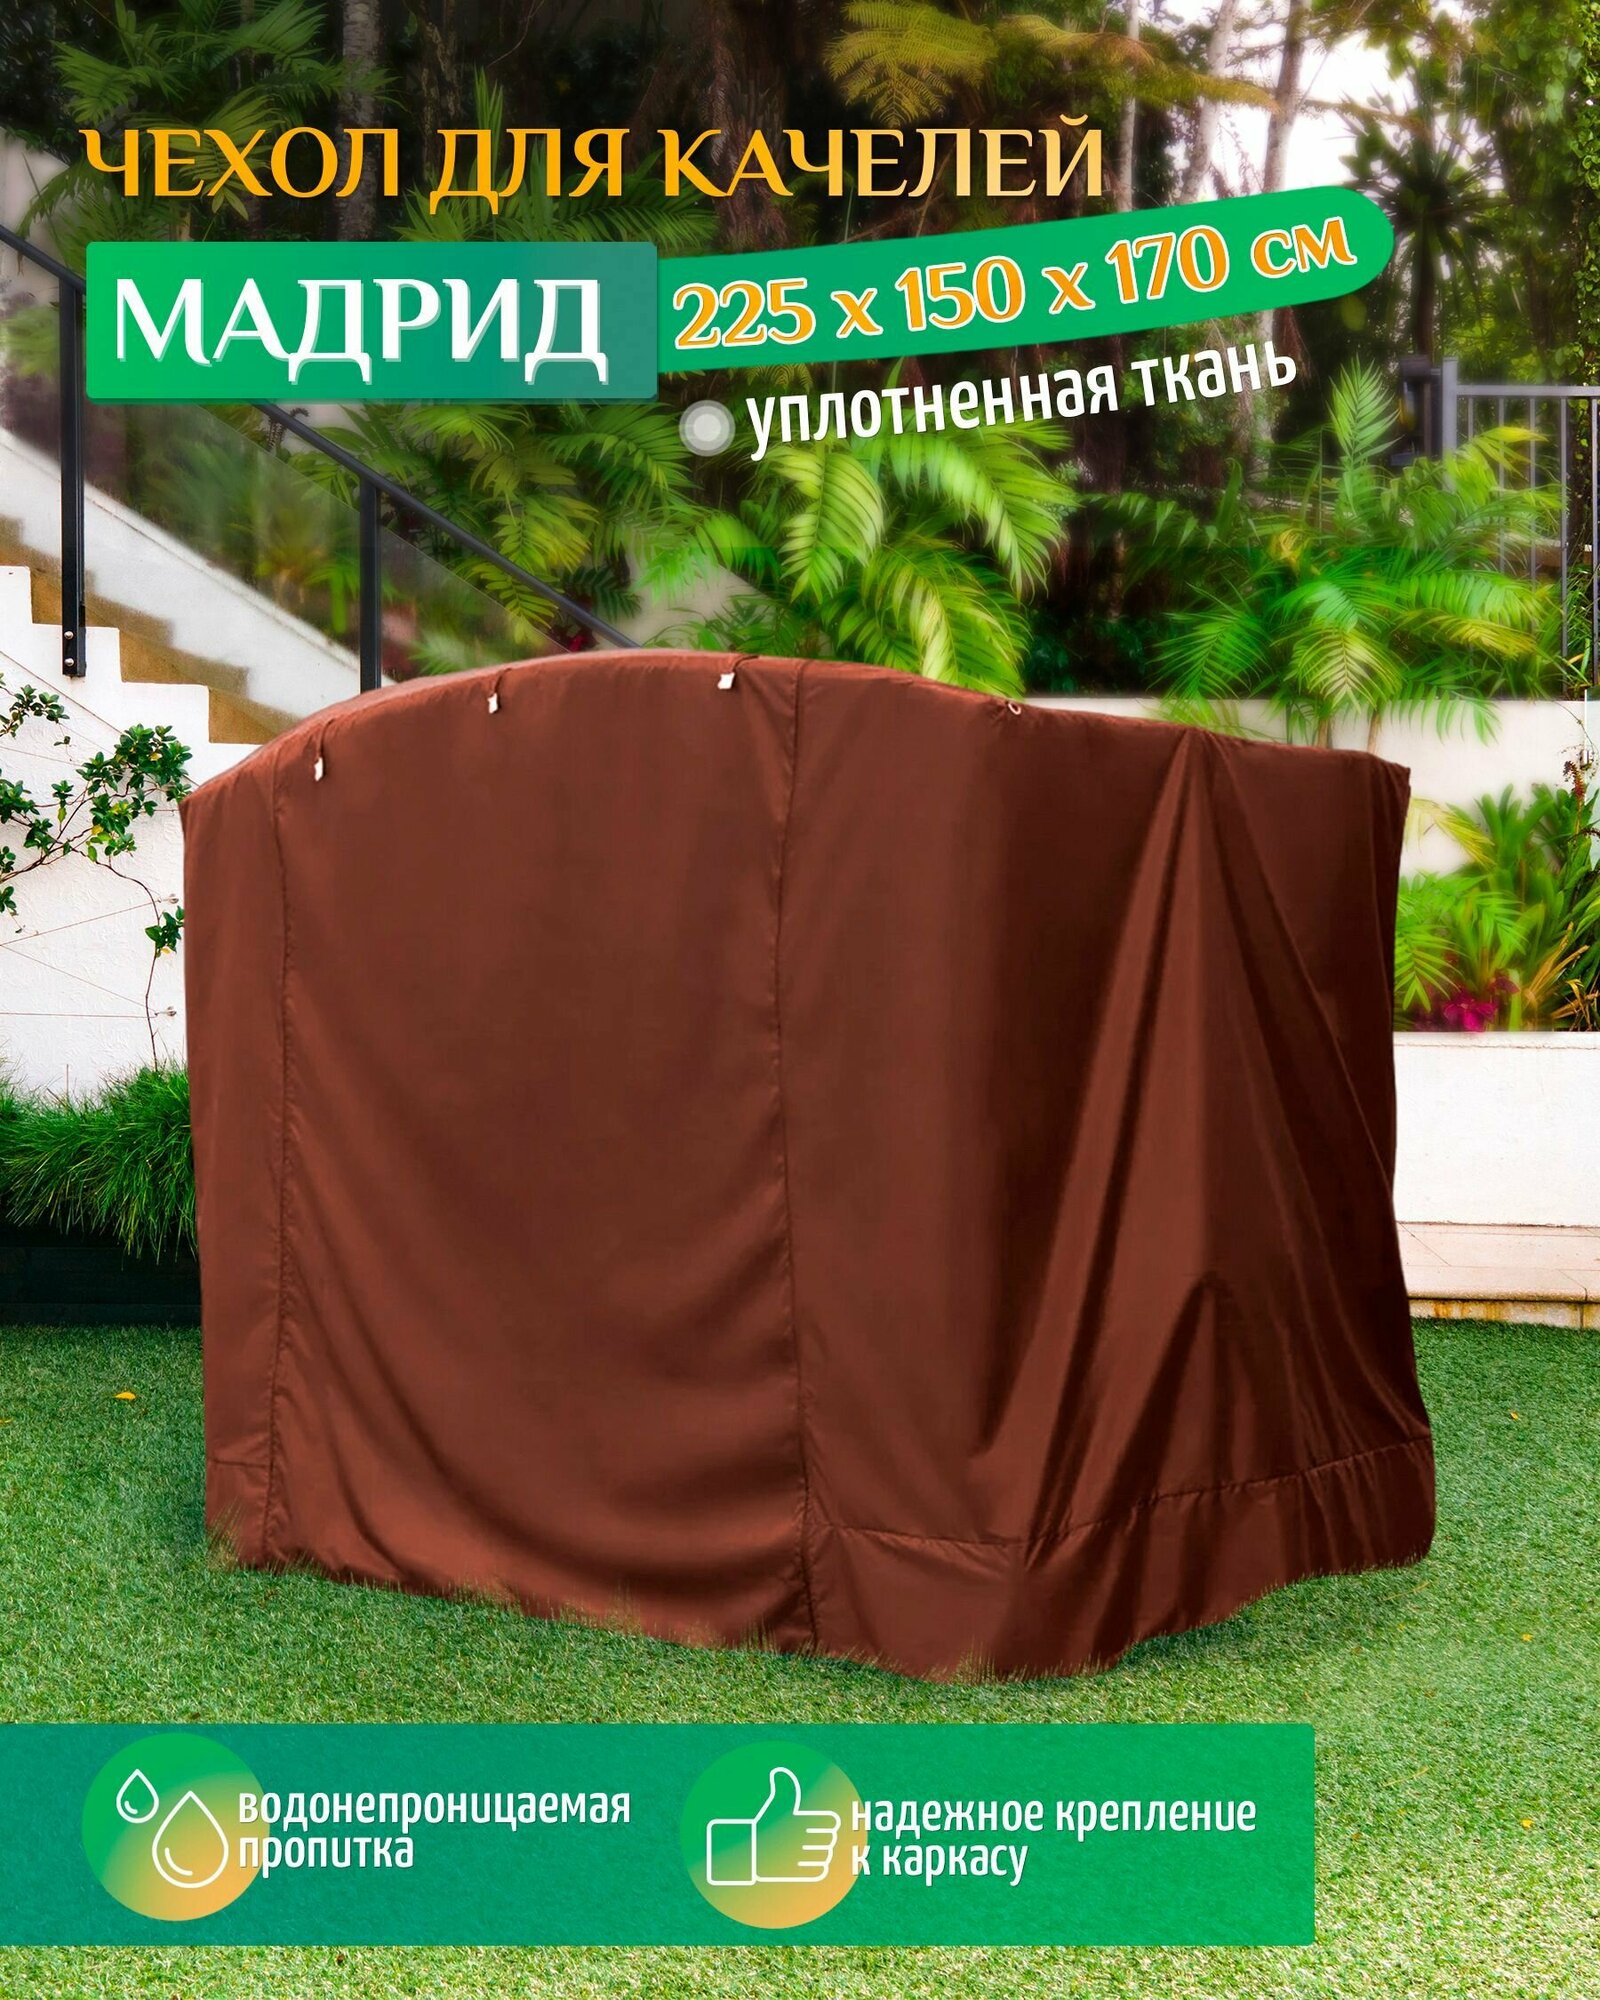 Чехол для качелей Мадрид (225х150х170 см) коричневый